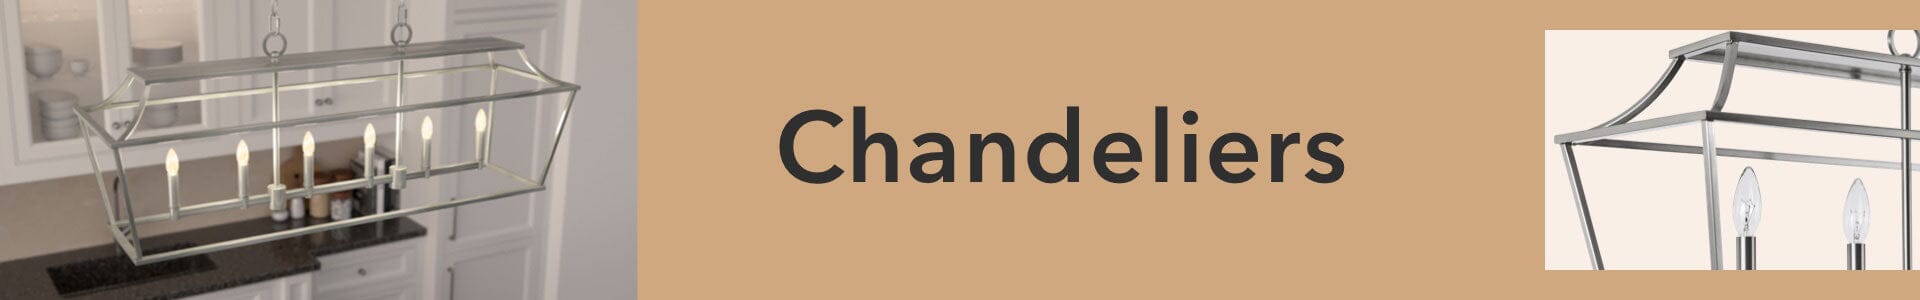 Chandeliers: Modern Chandelier Light Fixtures – Hunter Fan